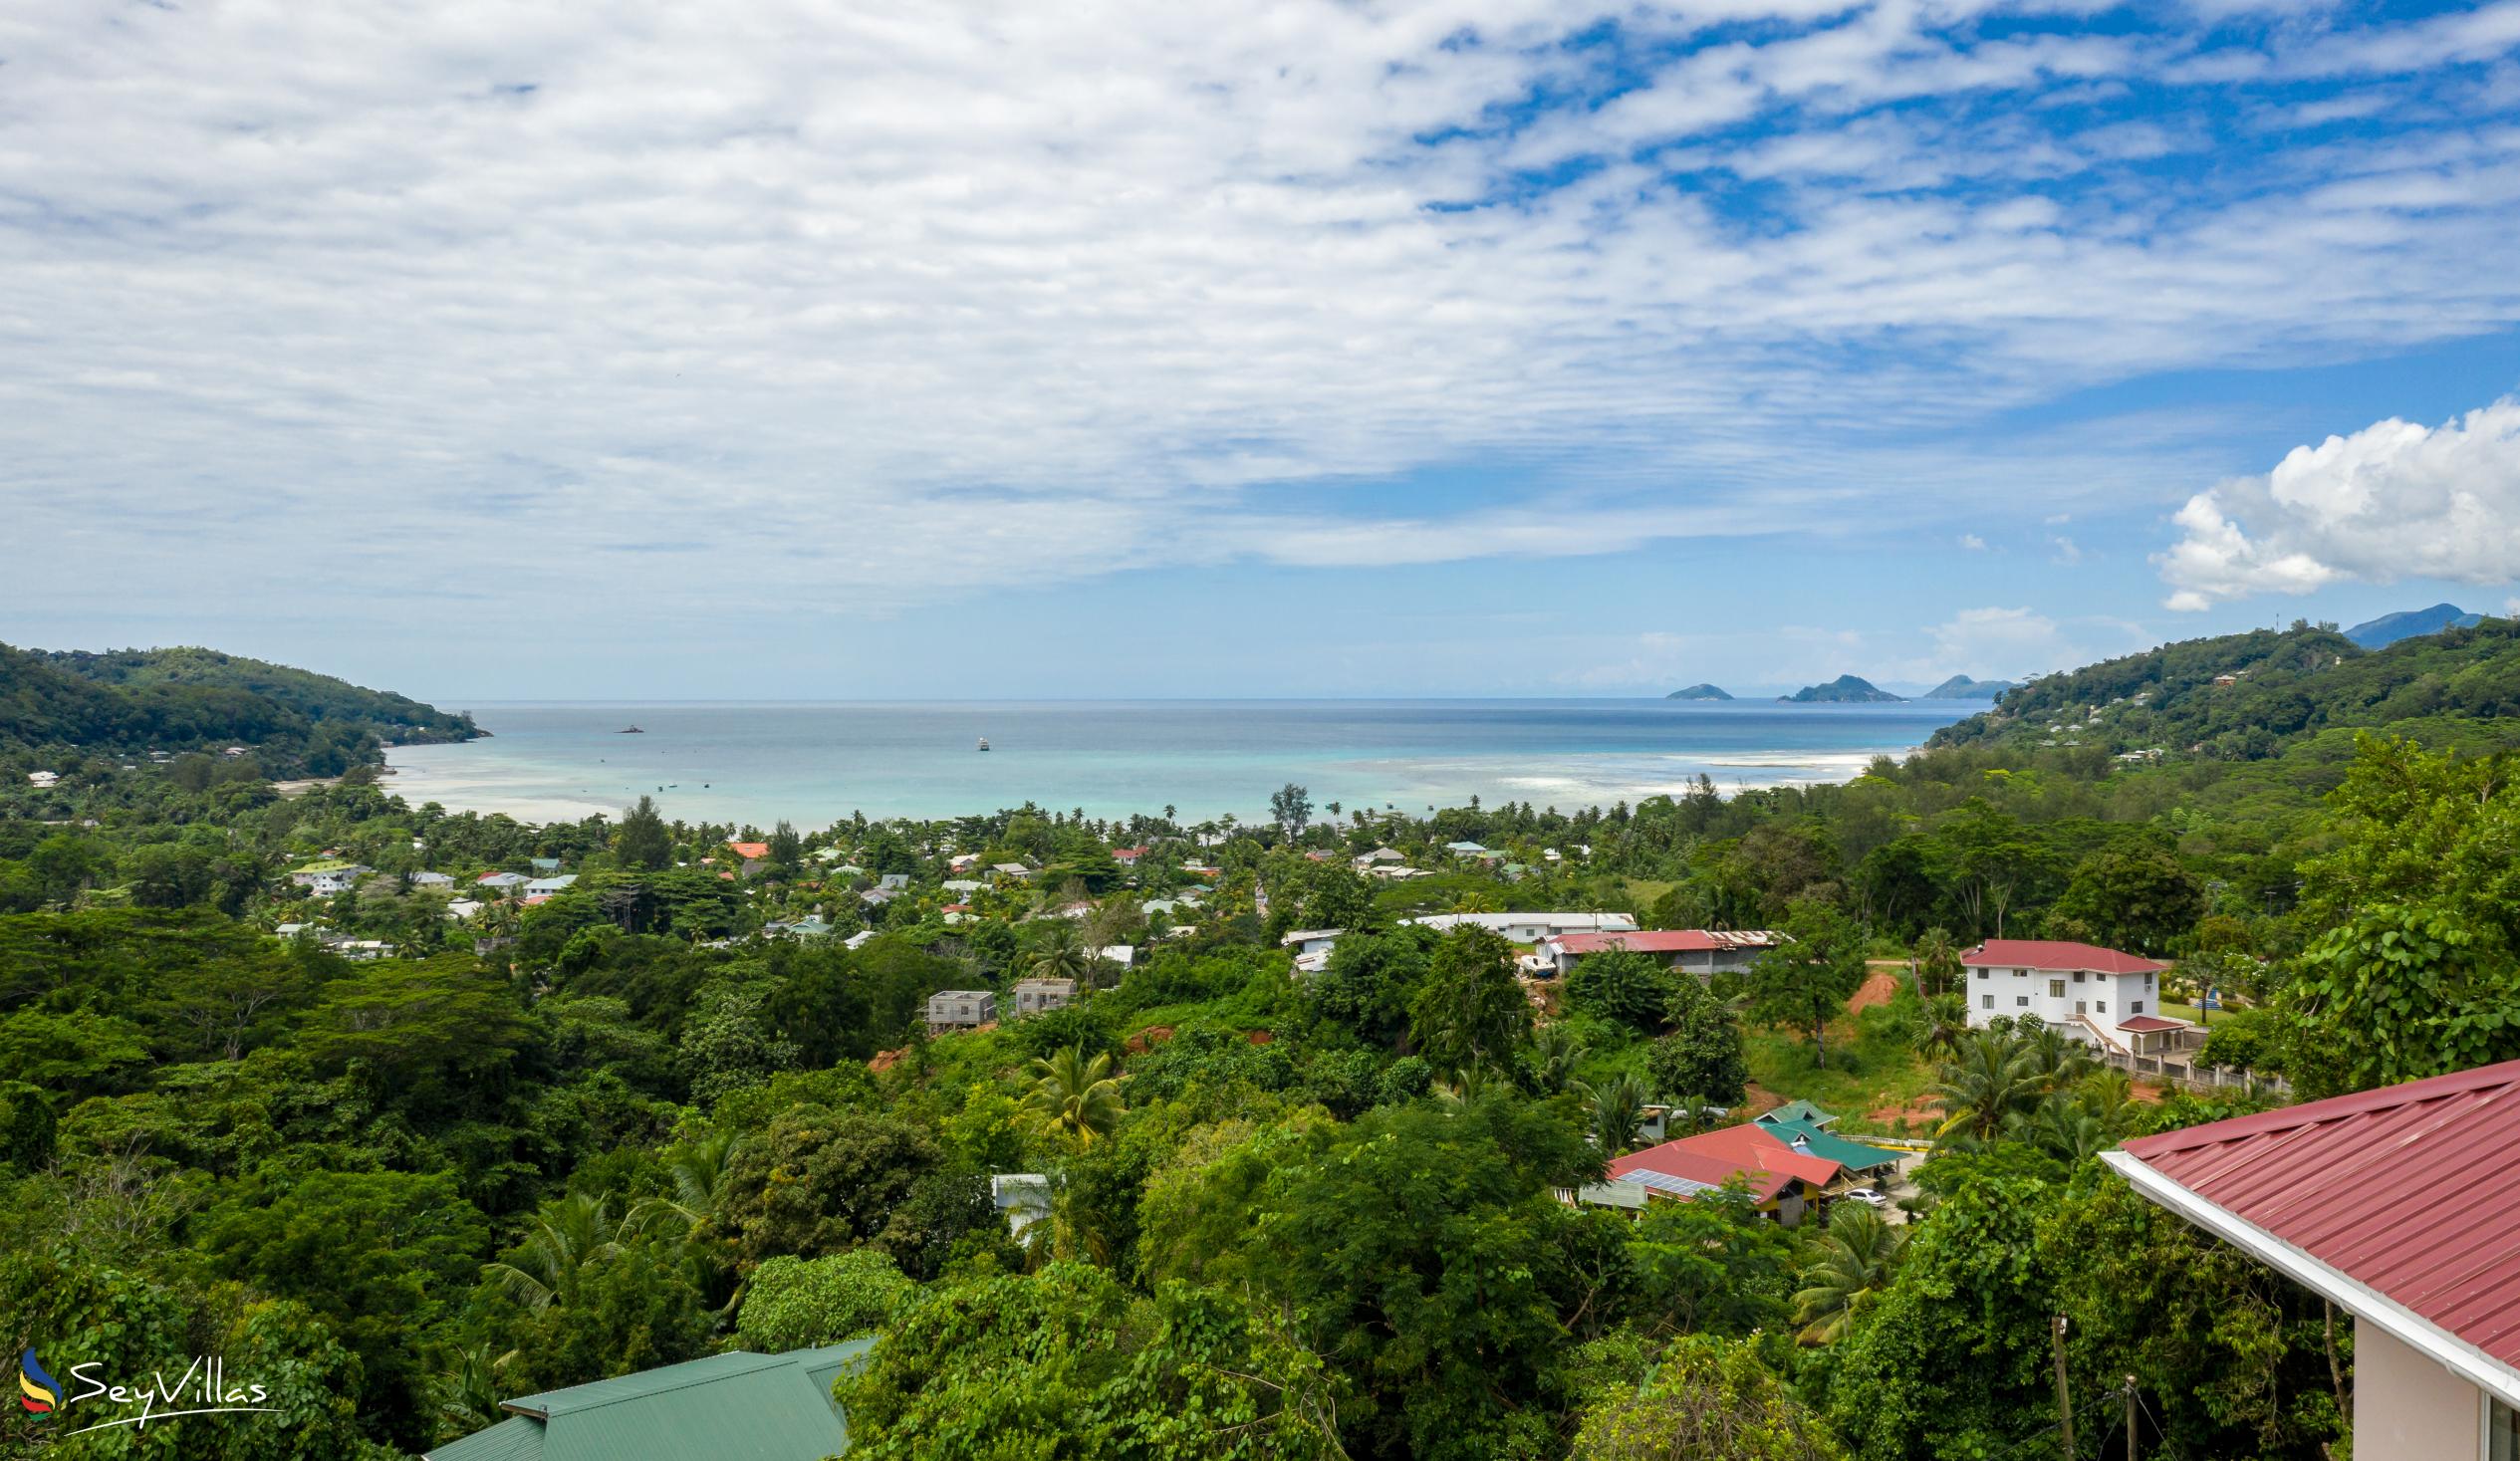 Foto 16: Cella Villa - Posizione - Mahé (Seychelles)